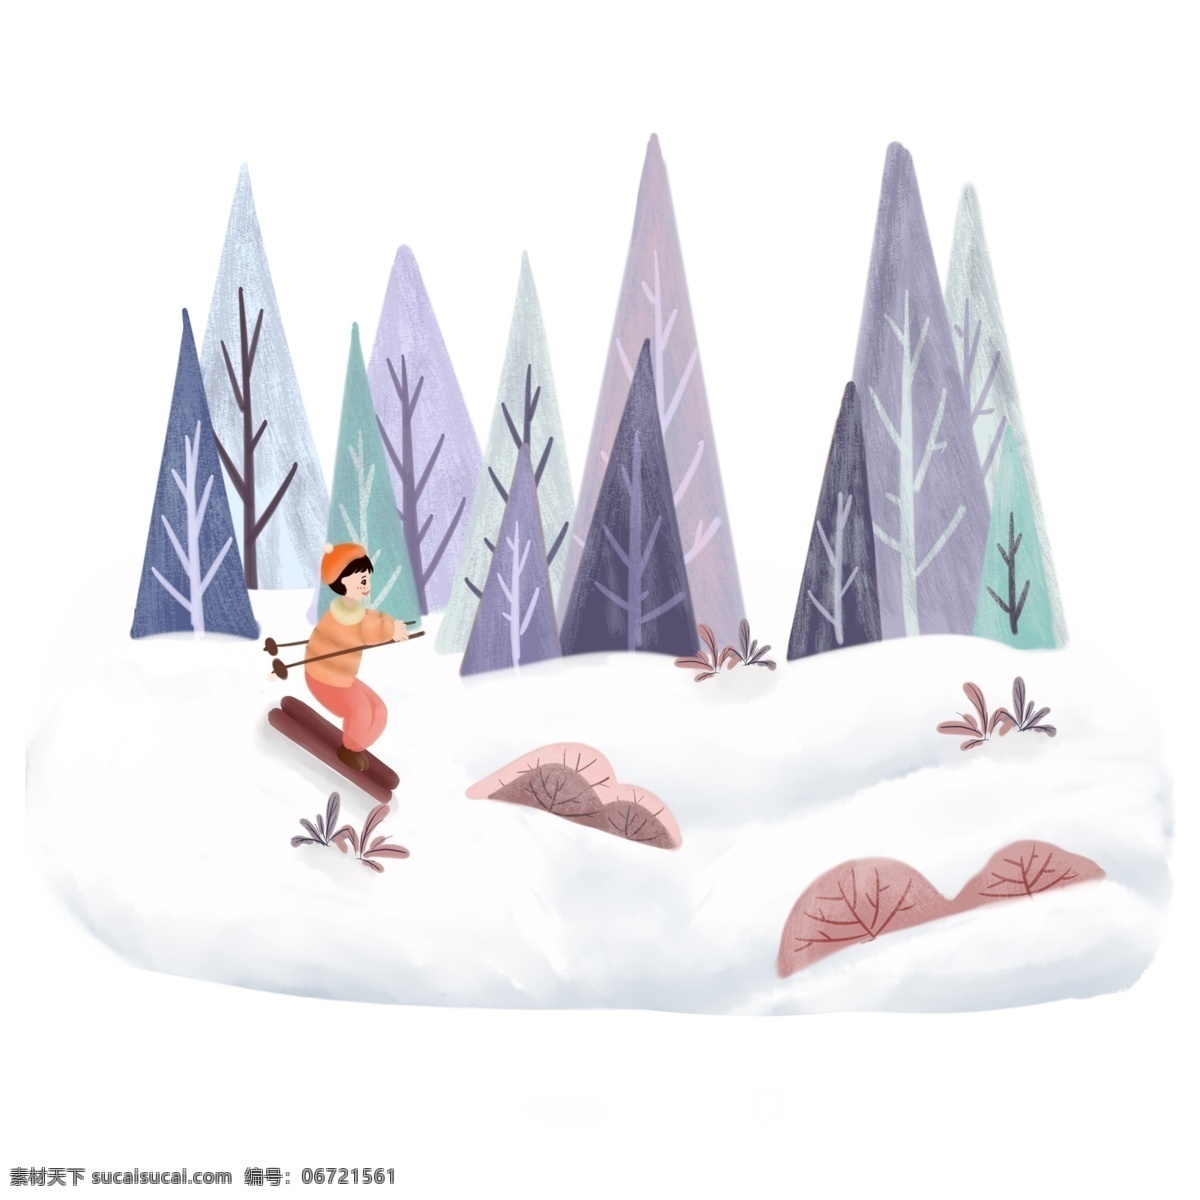 冬季 雪景 小孩 滑雪 手绘 插画 小清新 冬天 可爱 蓝色 下雪 圣诞 场景 寒冷 山脉 房屋 树木 清凉 雪山